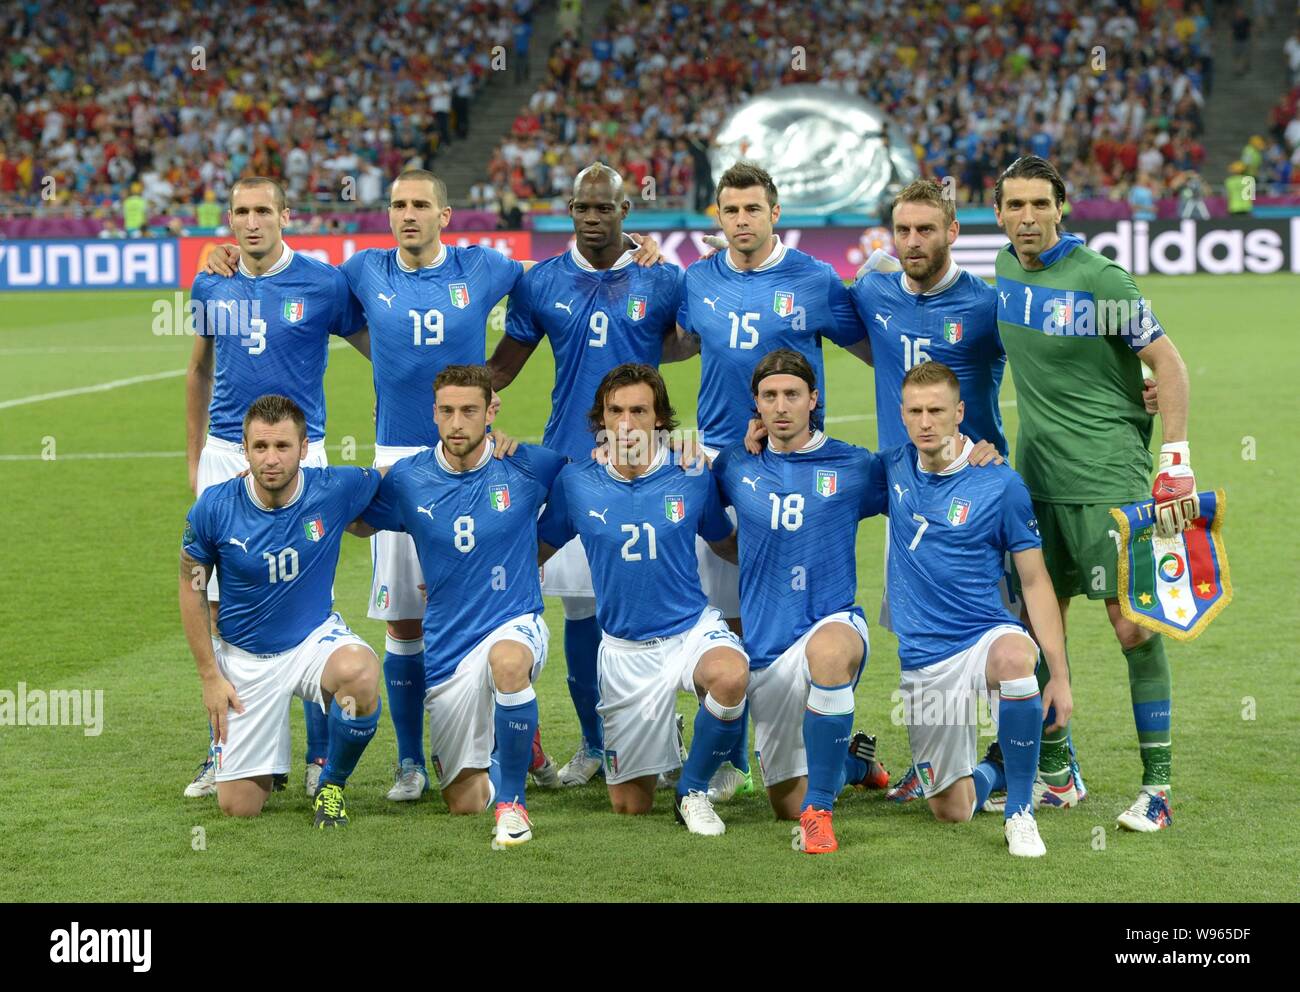 Squadra Nazionale Di Calcio Italia Immagini e Fotos Stock - Alamy